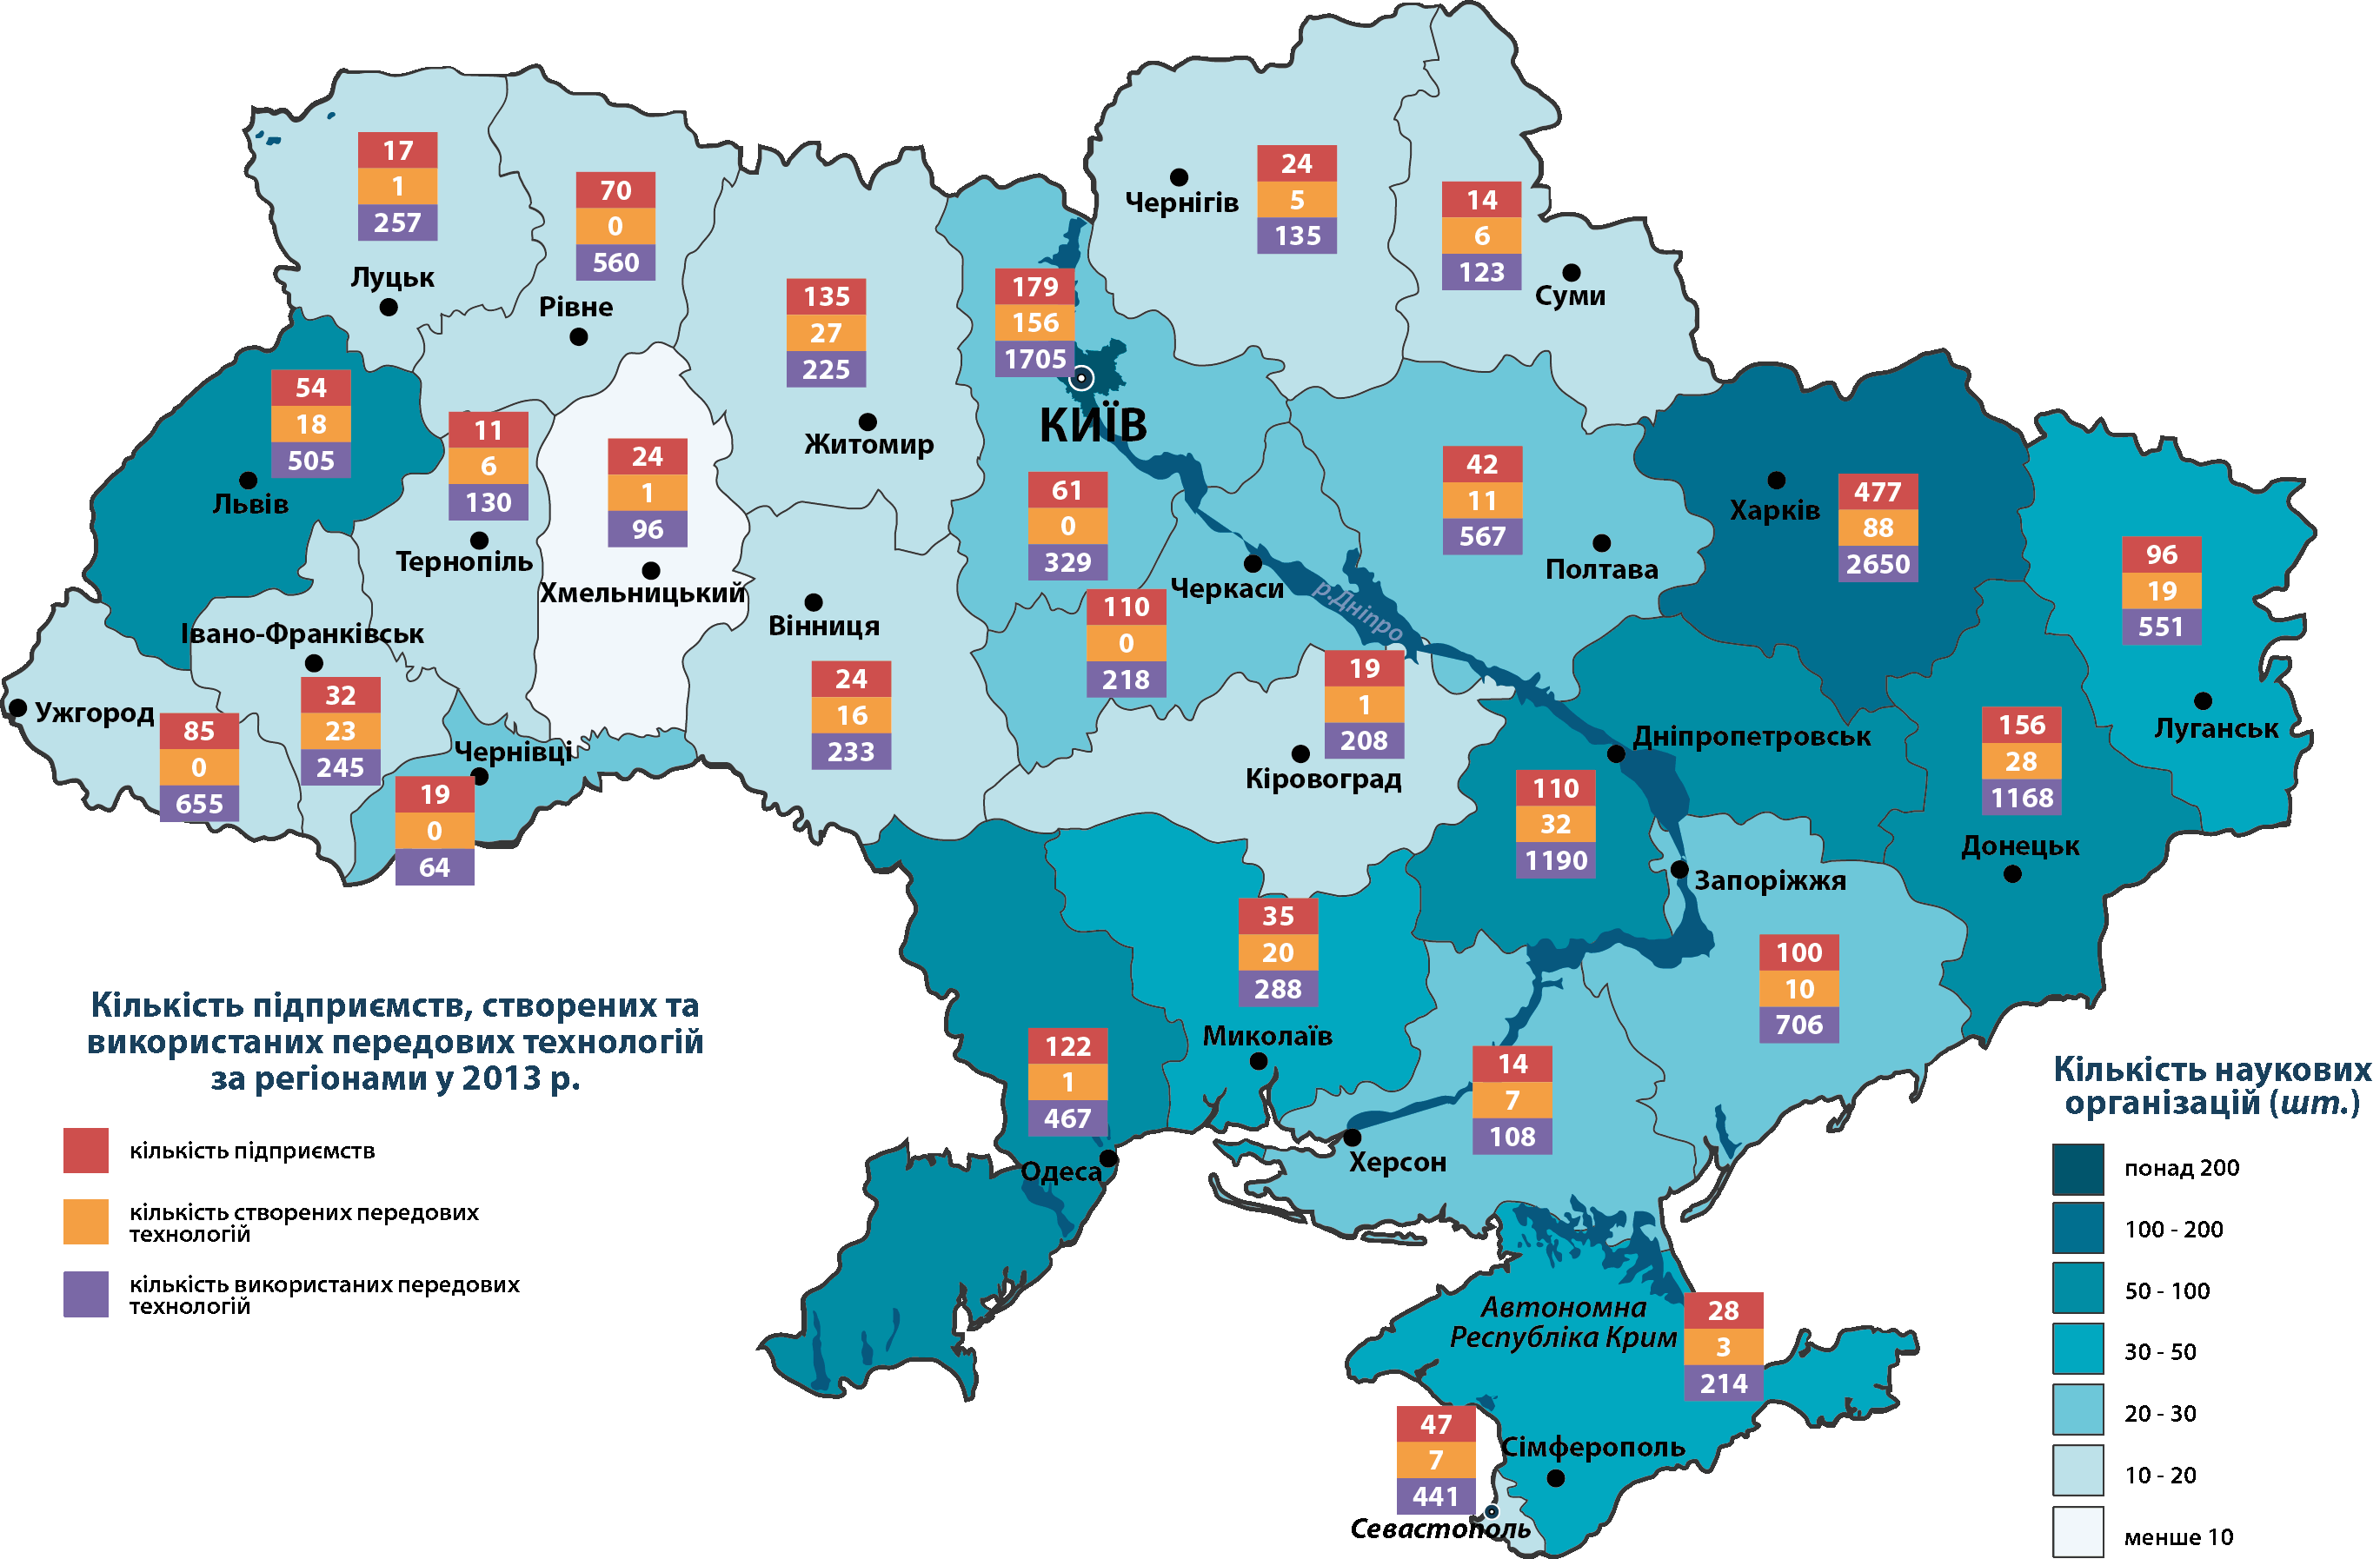 Научные организации в Украине